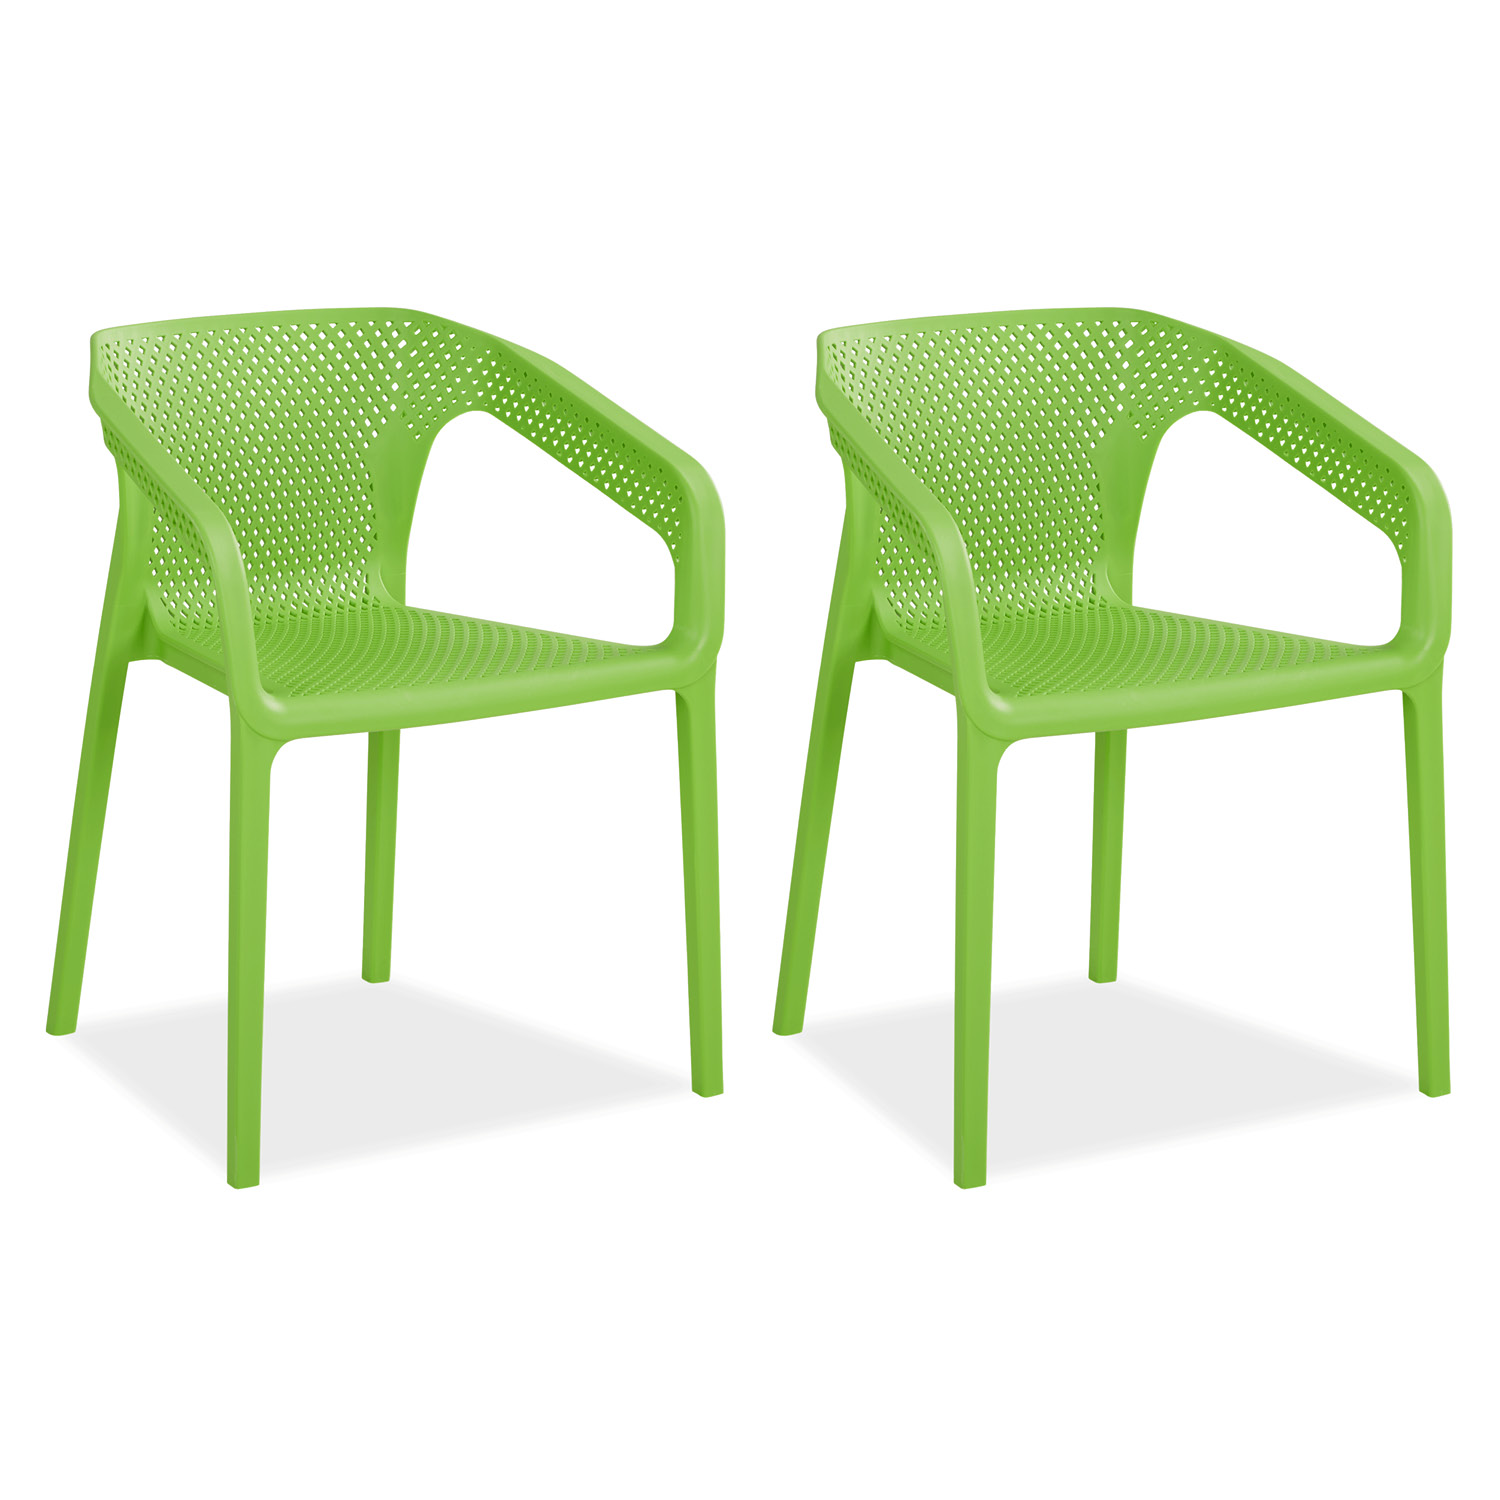 Chaise de jardin avec accoudoirs Vert Lot de 2 Fauteuils de jardin Plastique Chaises exterieur Chaises empilable